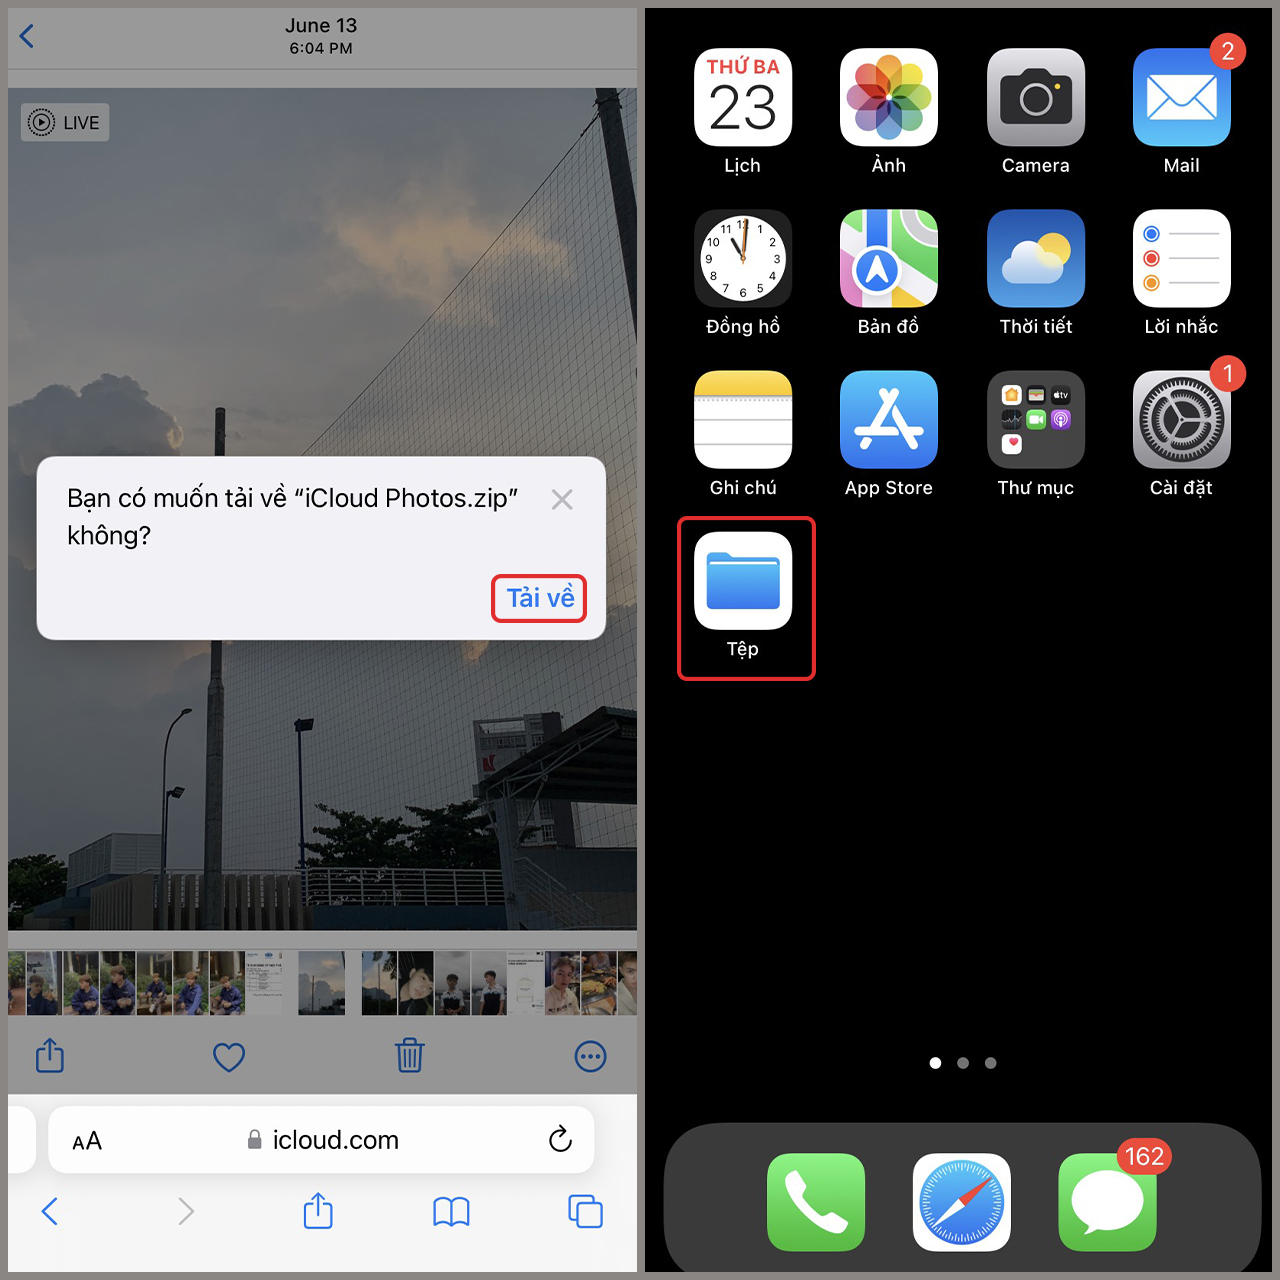 Tải ảnh iCloud về iPhone 13 Pro Max: Khai thác khả năng lưu trữ không giới hạn của iCloud bằng cách tải những tấm hình chất lượng cao về chiếc iPhone 13 Pro Max của bạn. Hãy trải nghiệm cảm giác thú vị khi các bức ảnh này được hiển thị rõ nét trên màn hình đỉnh cao của iPhone 13 Pro Max, giúp bạn tận hưởng chất lượng hình ảnh tuyệt vời đến từ các sản phẩm của Apple.